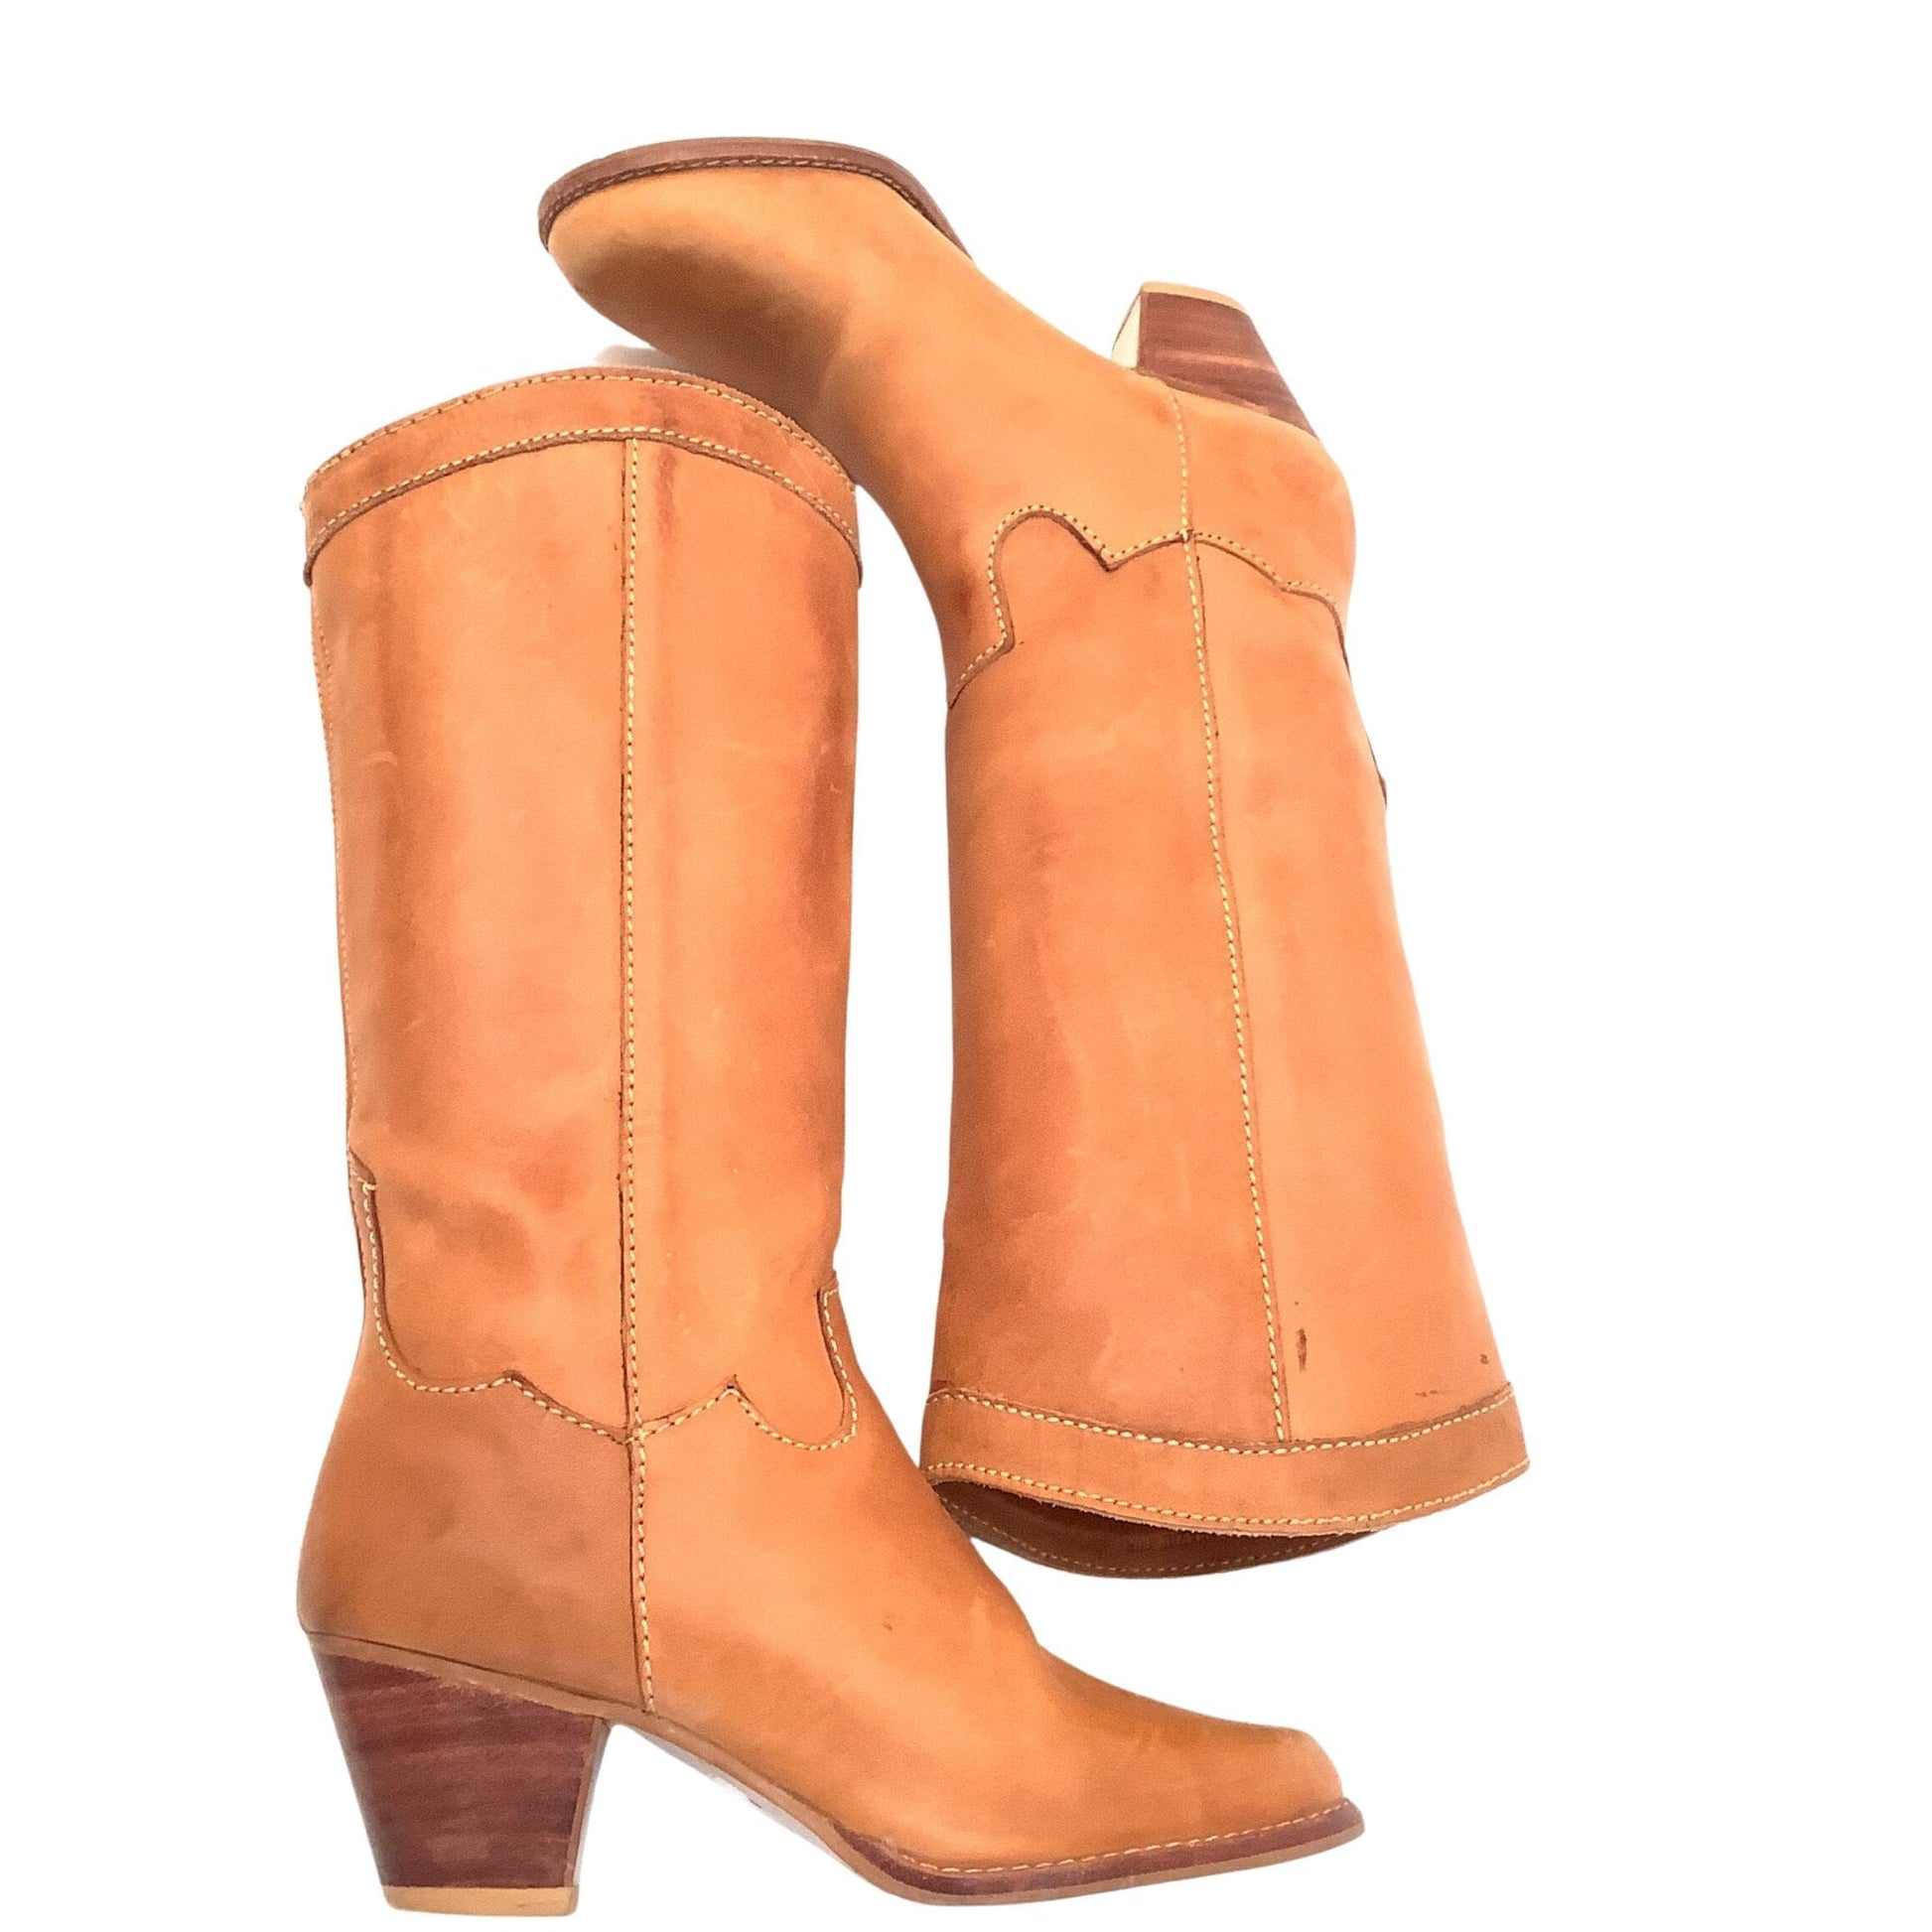 Minimalist Western Boots 6.5 / Tan / Vintage 1970s